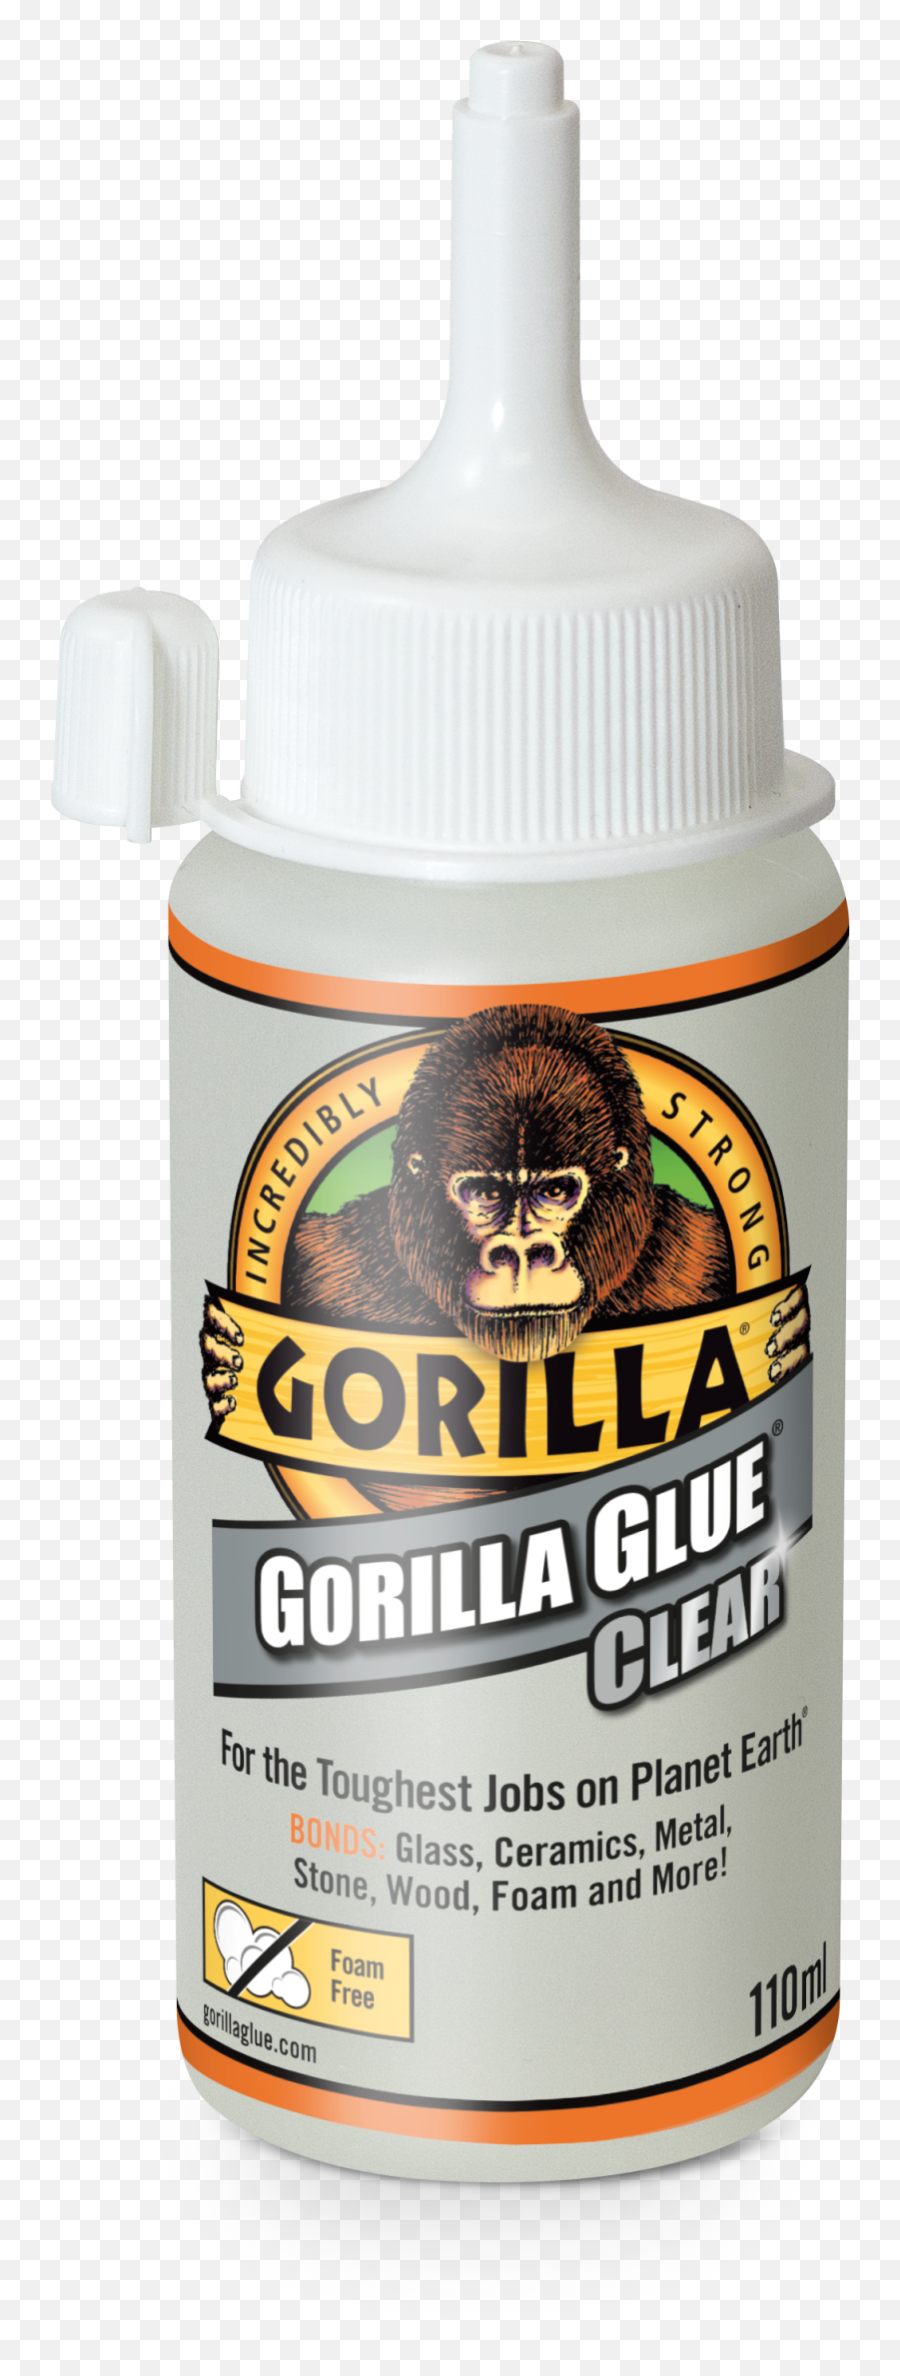 Gorilla Glue Launches Virtually Invisible Adhesive - Gorilla Glue Png,Gorilla Glue Logo